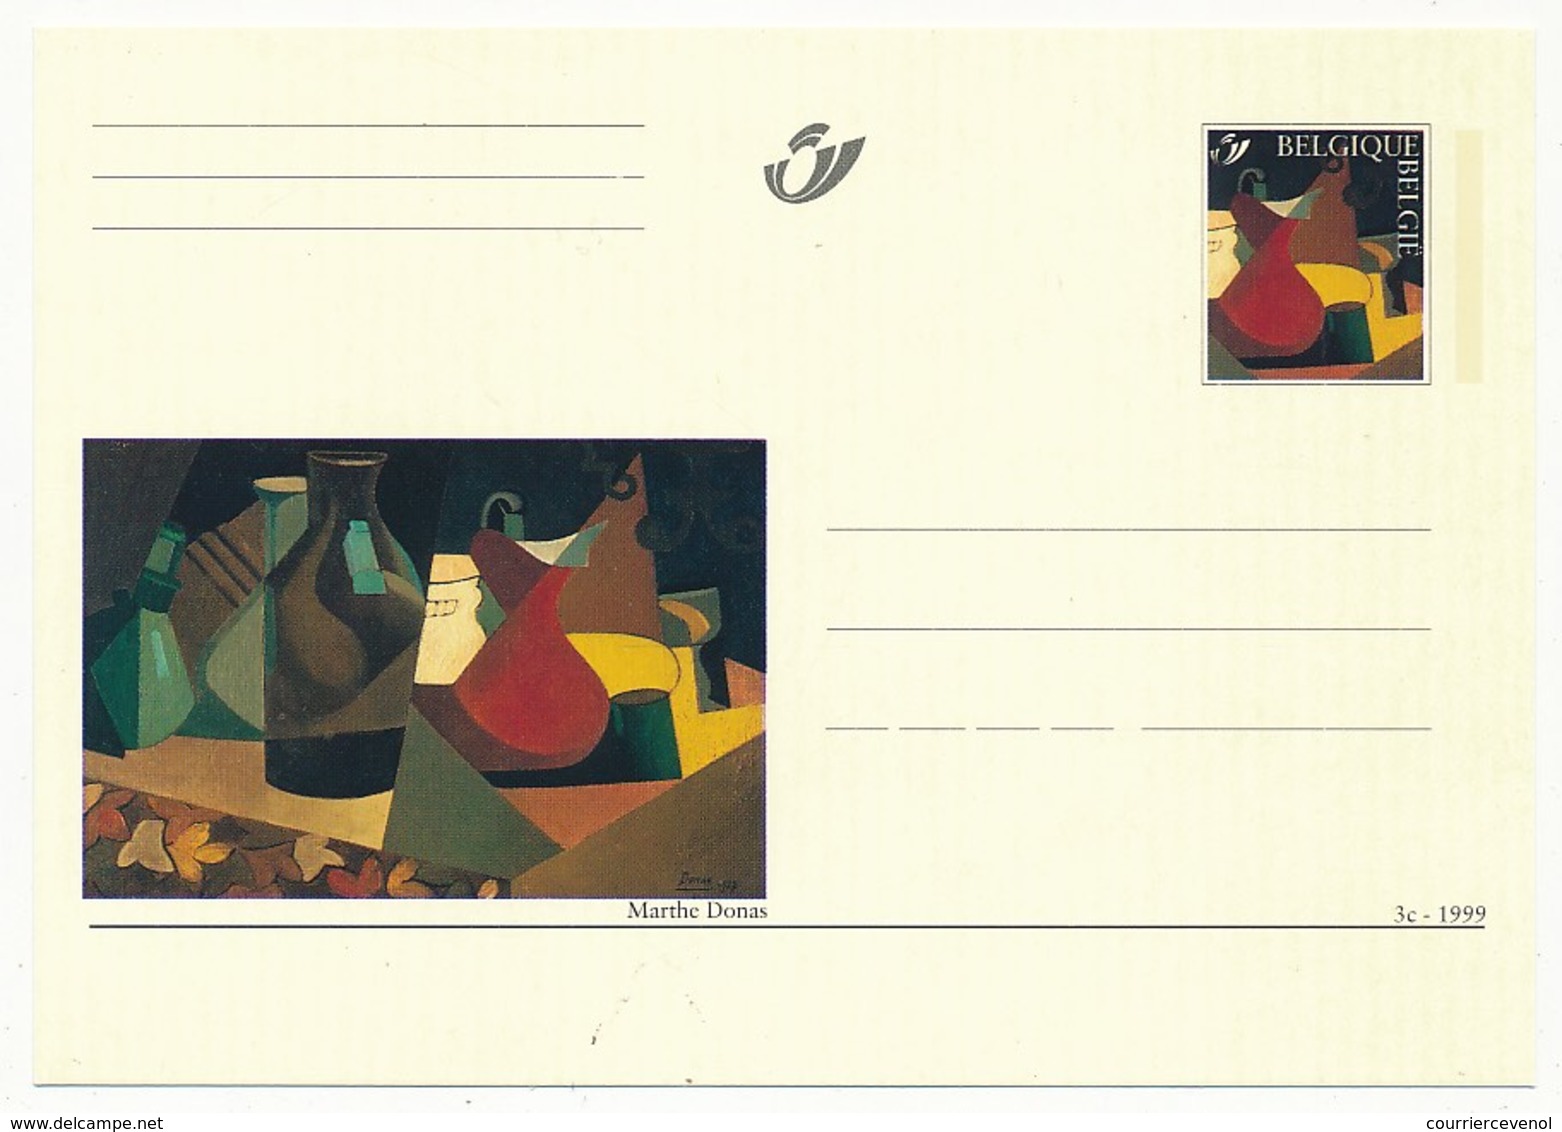 BELGIQUE => Lot de 32 cartes différentes, entiers postaux illustrés commémoratifs, neufs